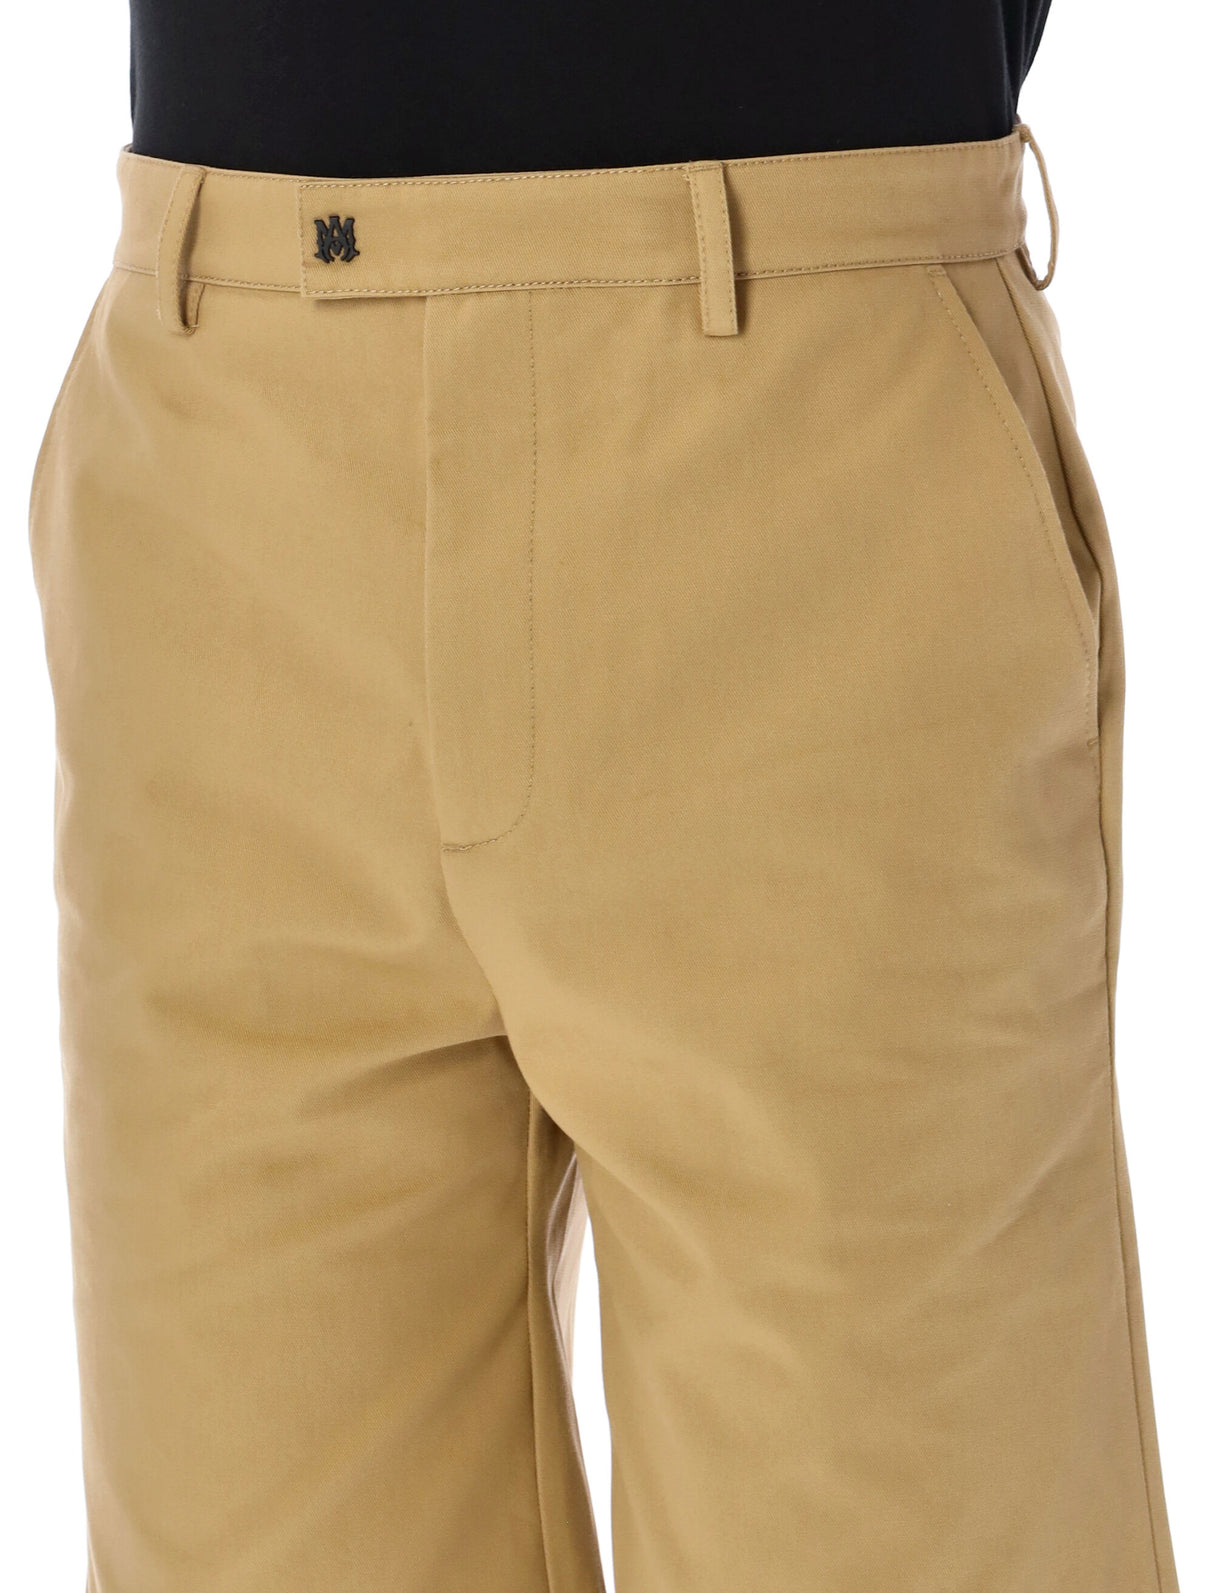 男士棕黑古銅區域藝術造型短褲